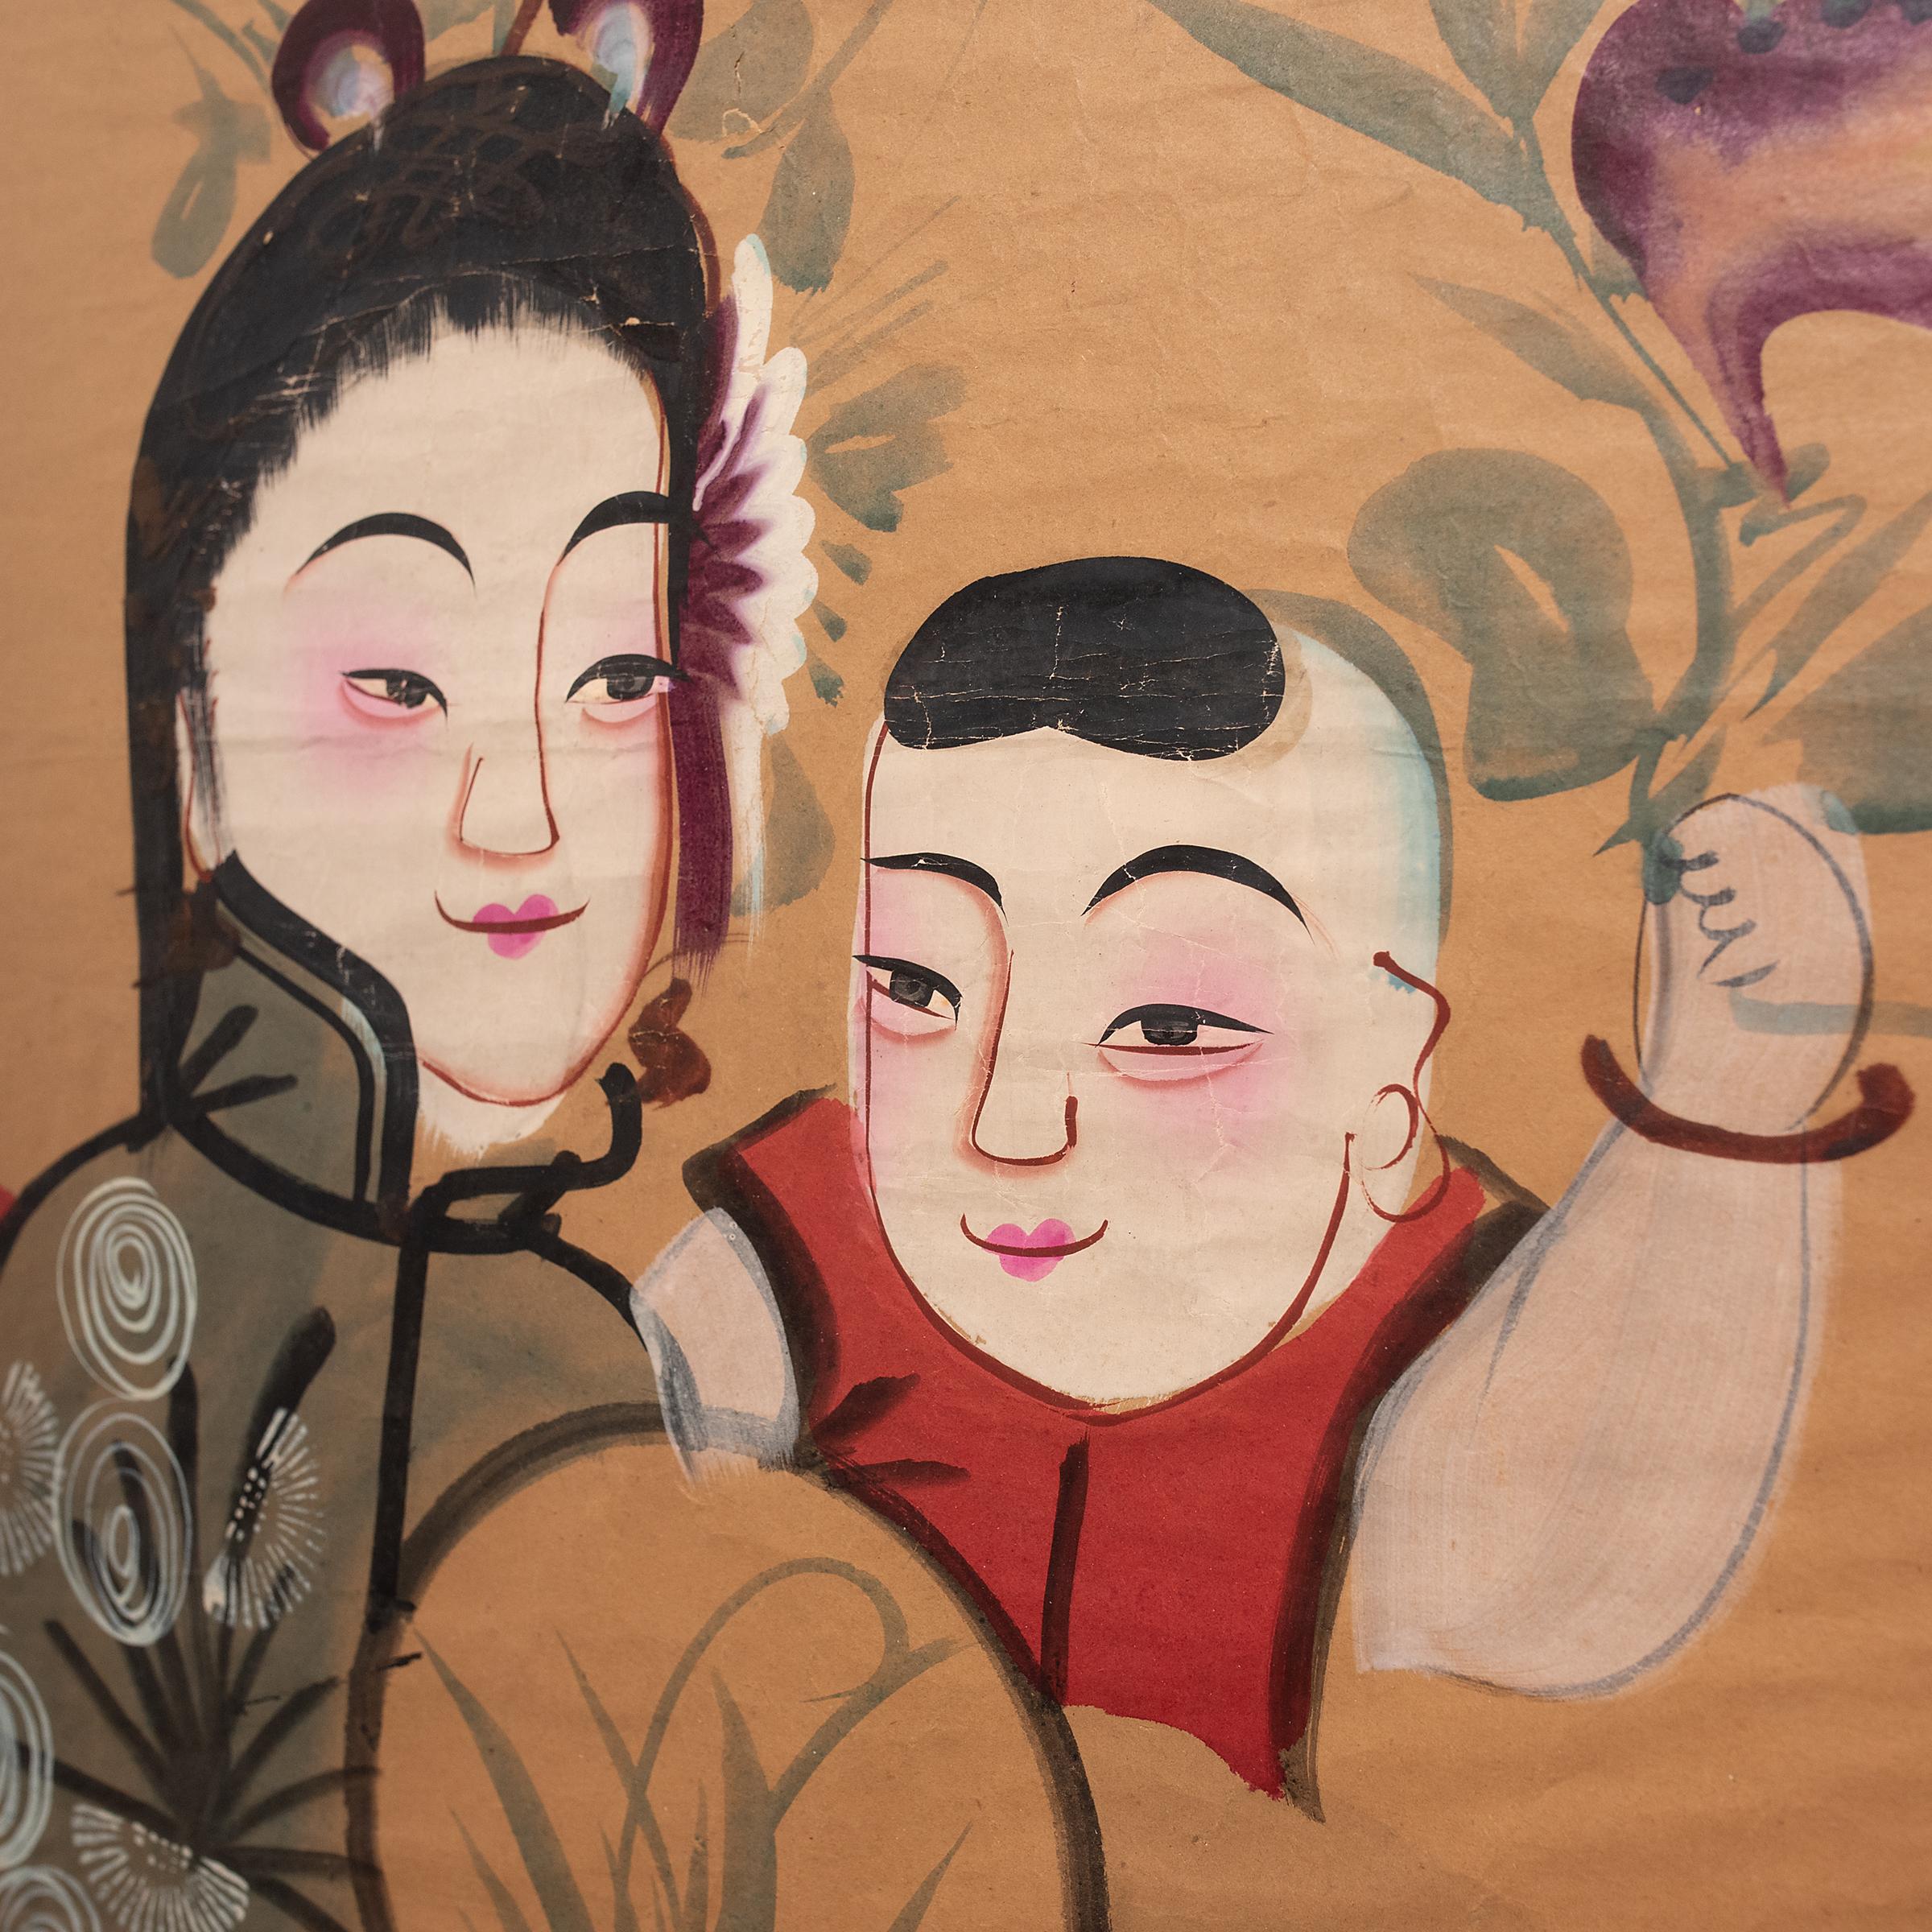 Chinesische Neujahrsgemälde (nian hua) sind farbenfrohe Volksgemälde, die zur Feier des jährlichen Frühlingsfestes geschaffen werden. Die von Volkskünstlern in regionalen Studios gezeichneten oder gedruckten Nian Hua-Gemälde zeichnen sich durch